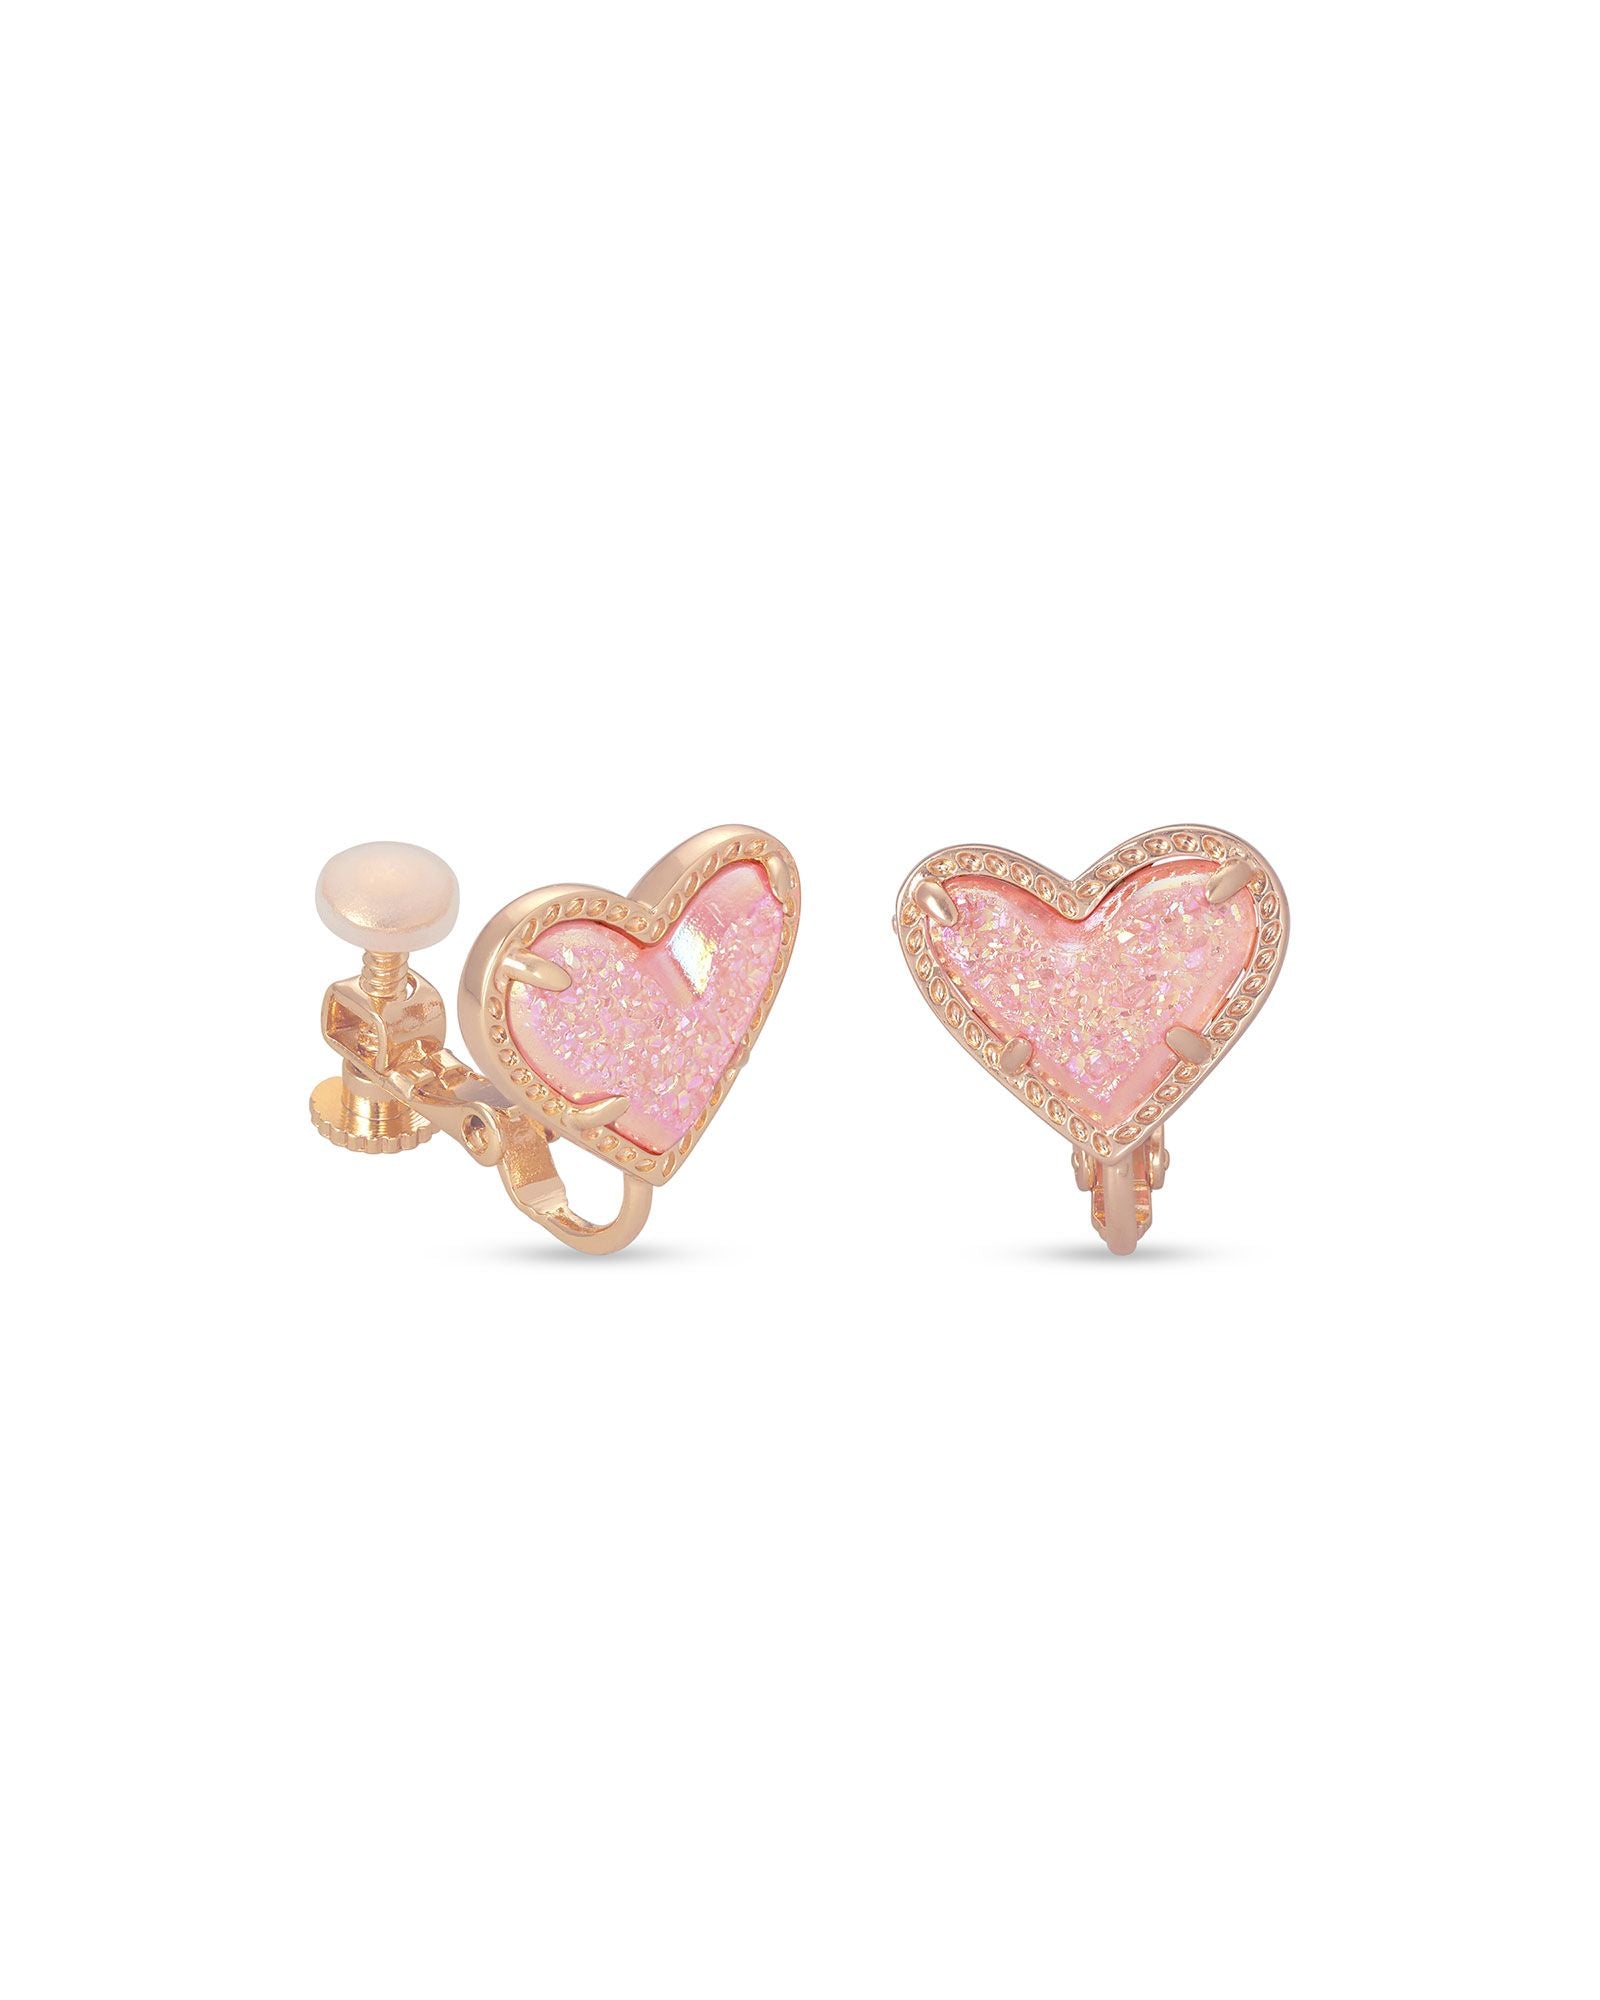 Ari Heart Clip on Earrings Pink Drusy